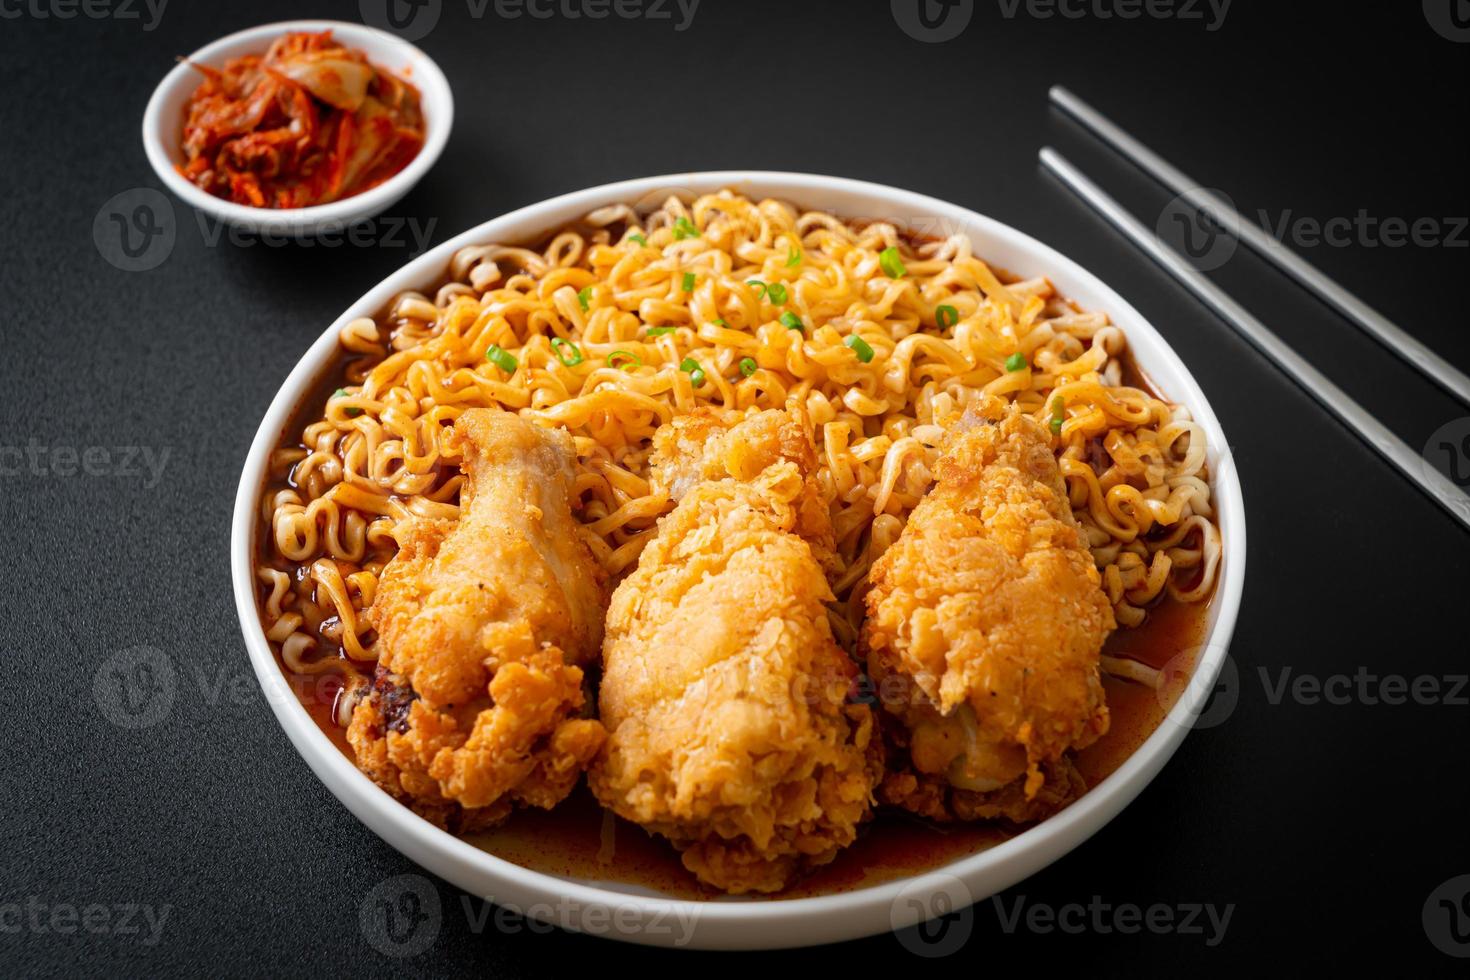 nouilles instantanées coréennes avec poulet frit ou ramyeon de poulet frit photo